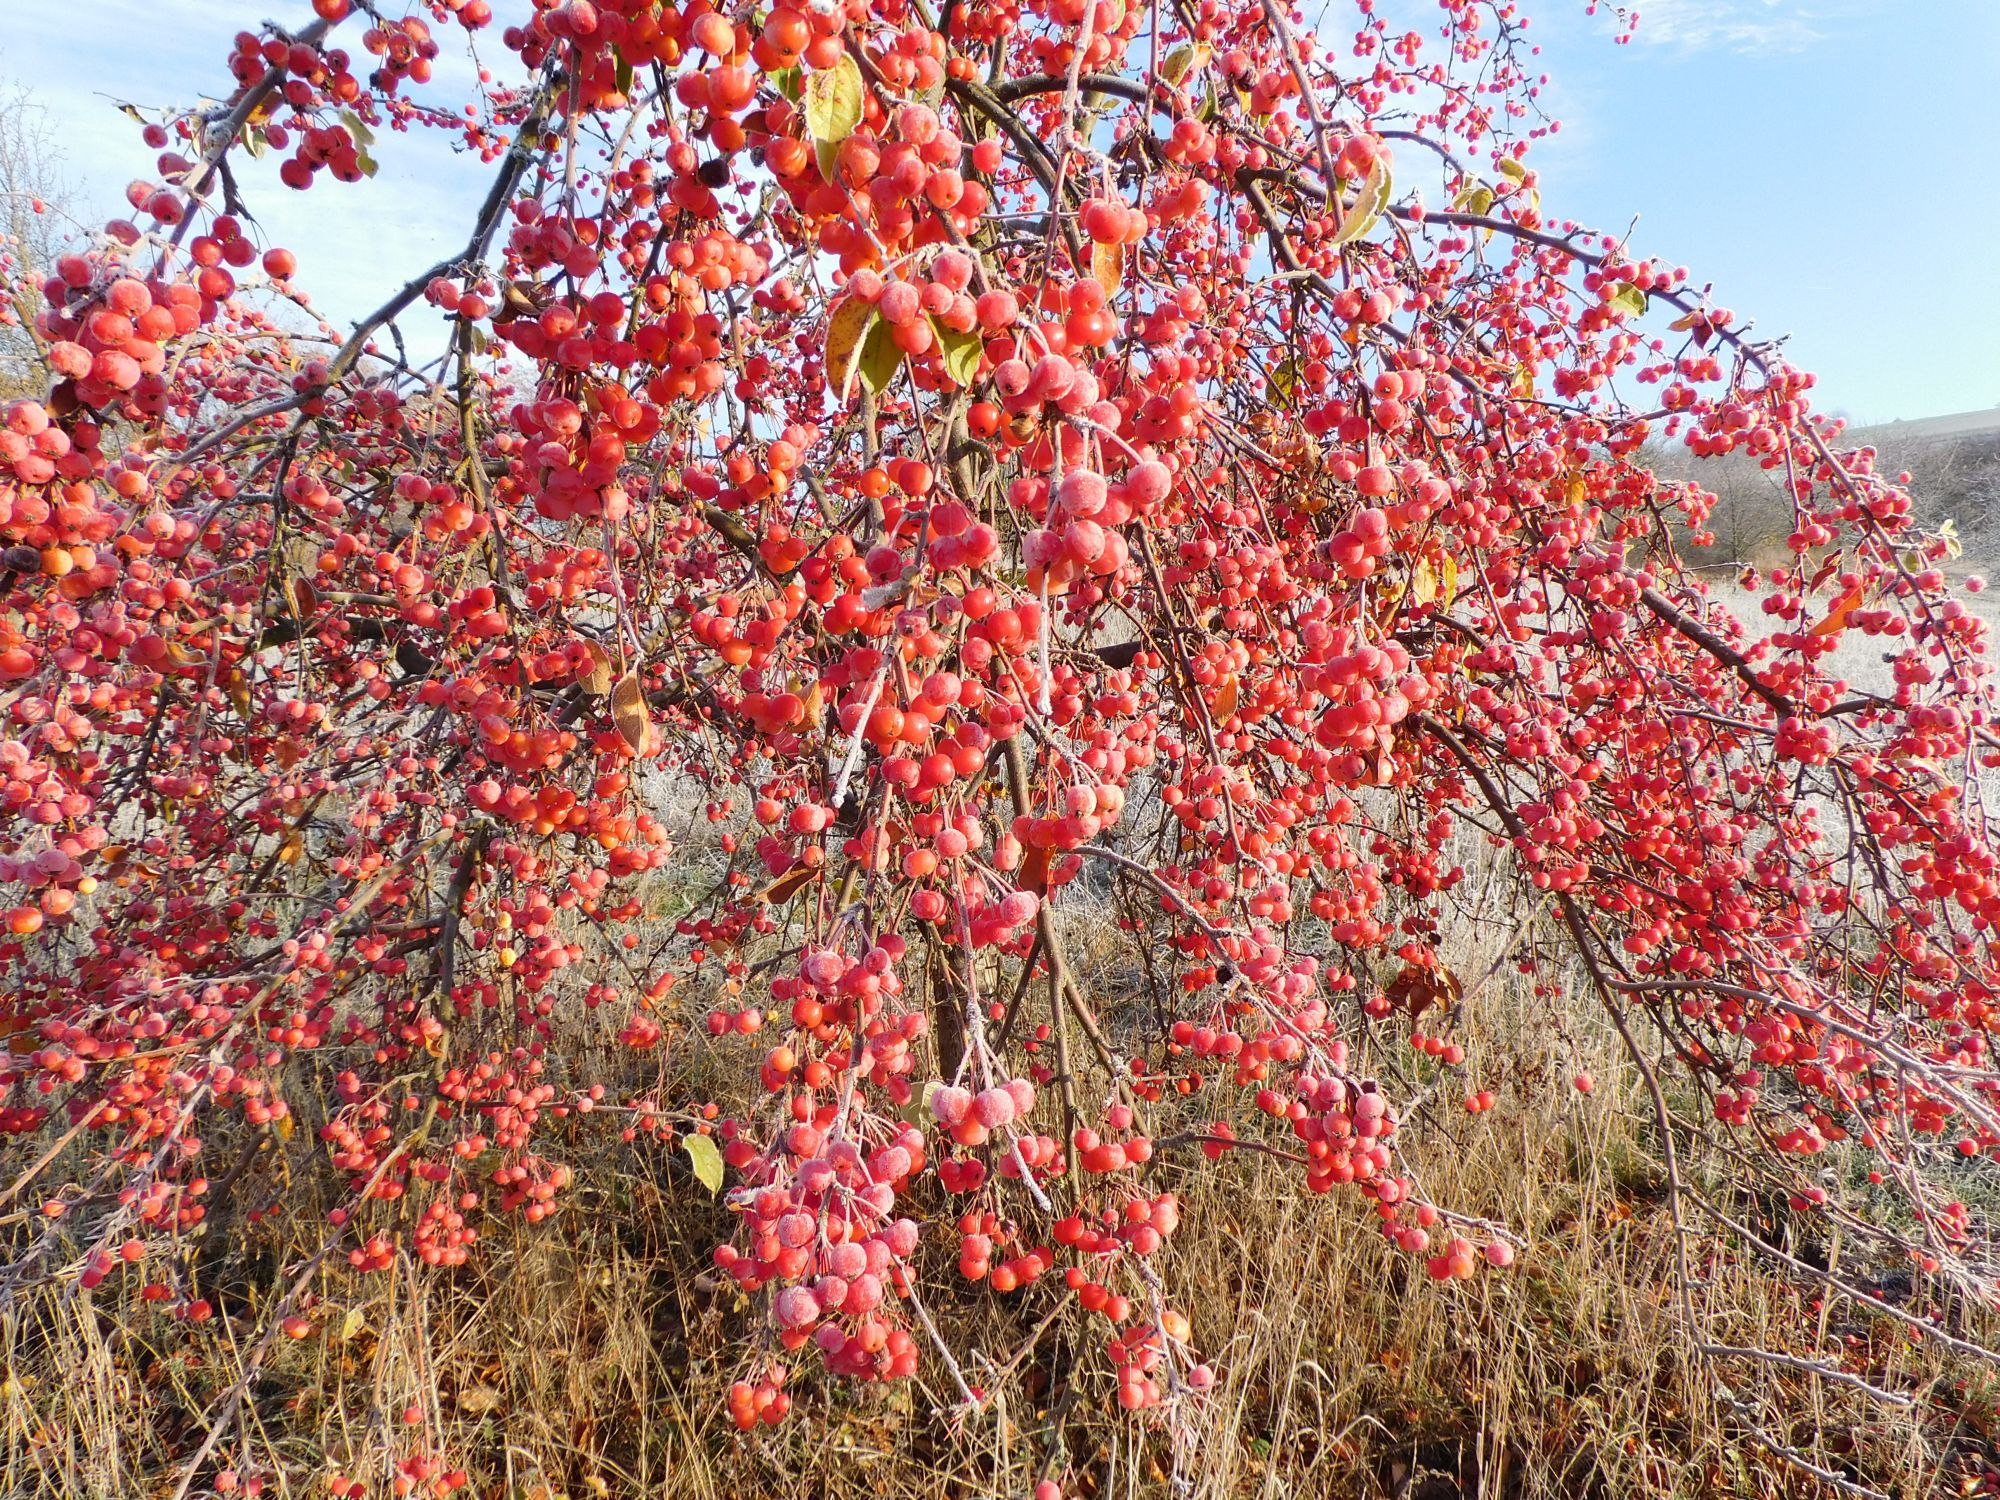 Apfelbaum im Winter mit roten Äpfeln © Wolfgang Bode